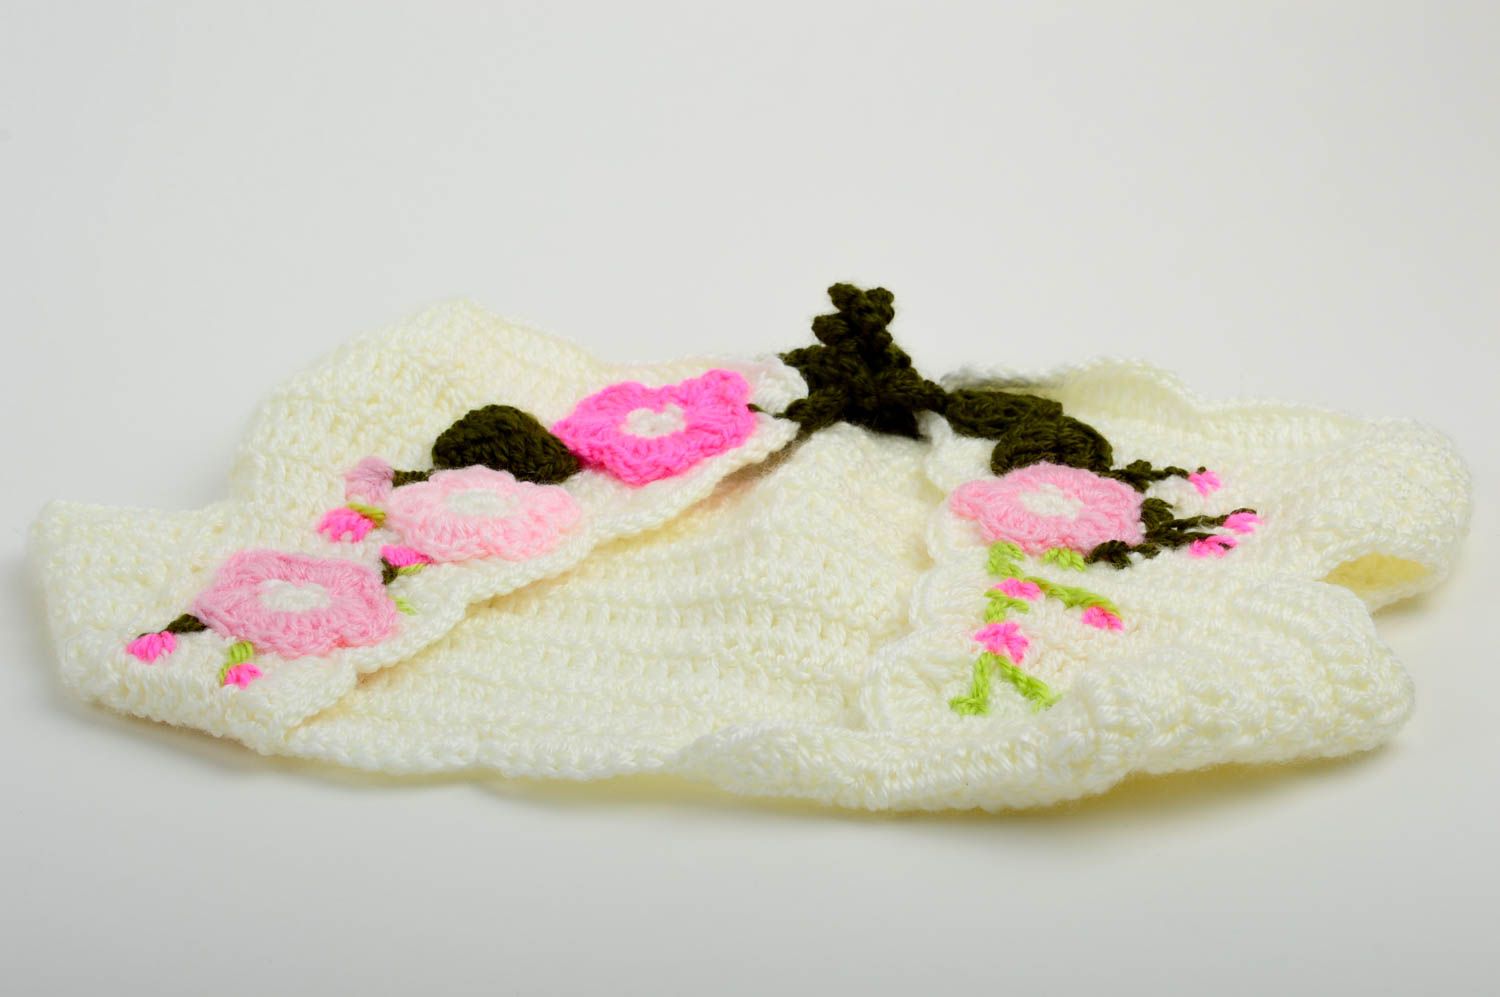 Handmade crochet vest goods for children kids clothing sleeveless top for girl photo 3